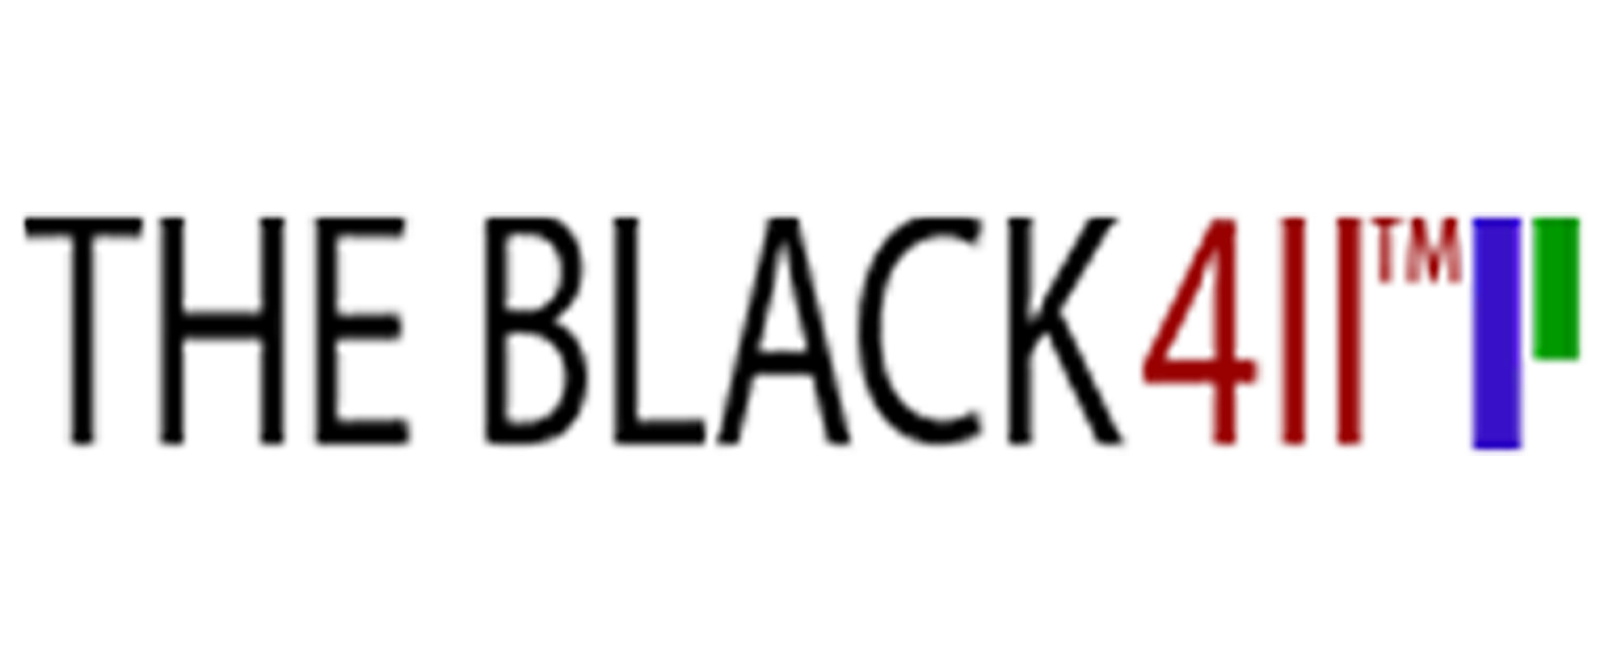 the-black-411-client-logo_1920x800